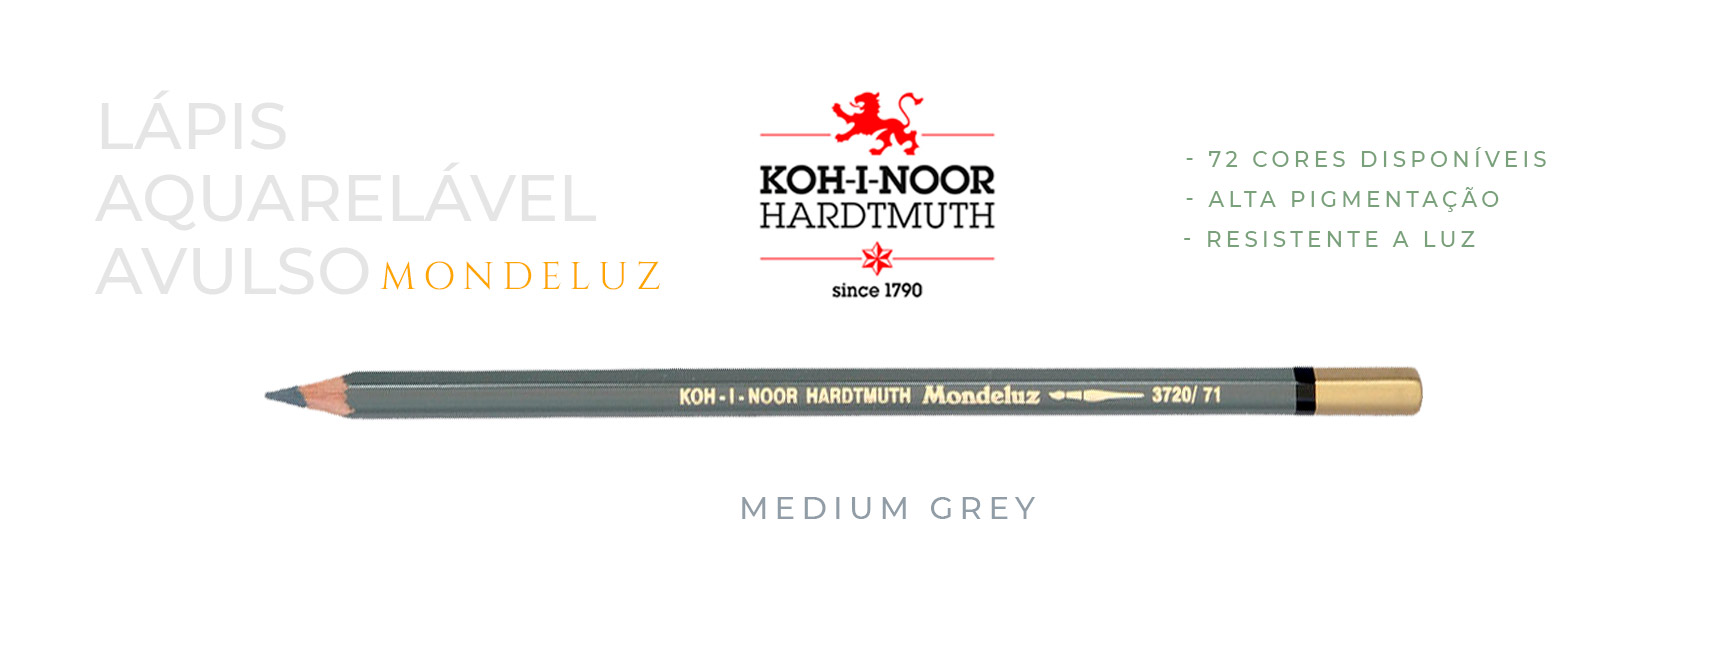 Lápis aquarelável avulso medium grey koh-i-noor